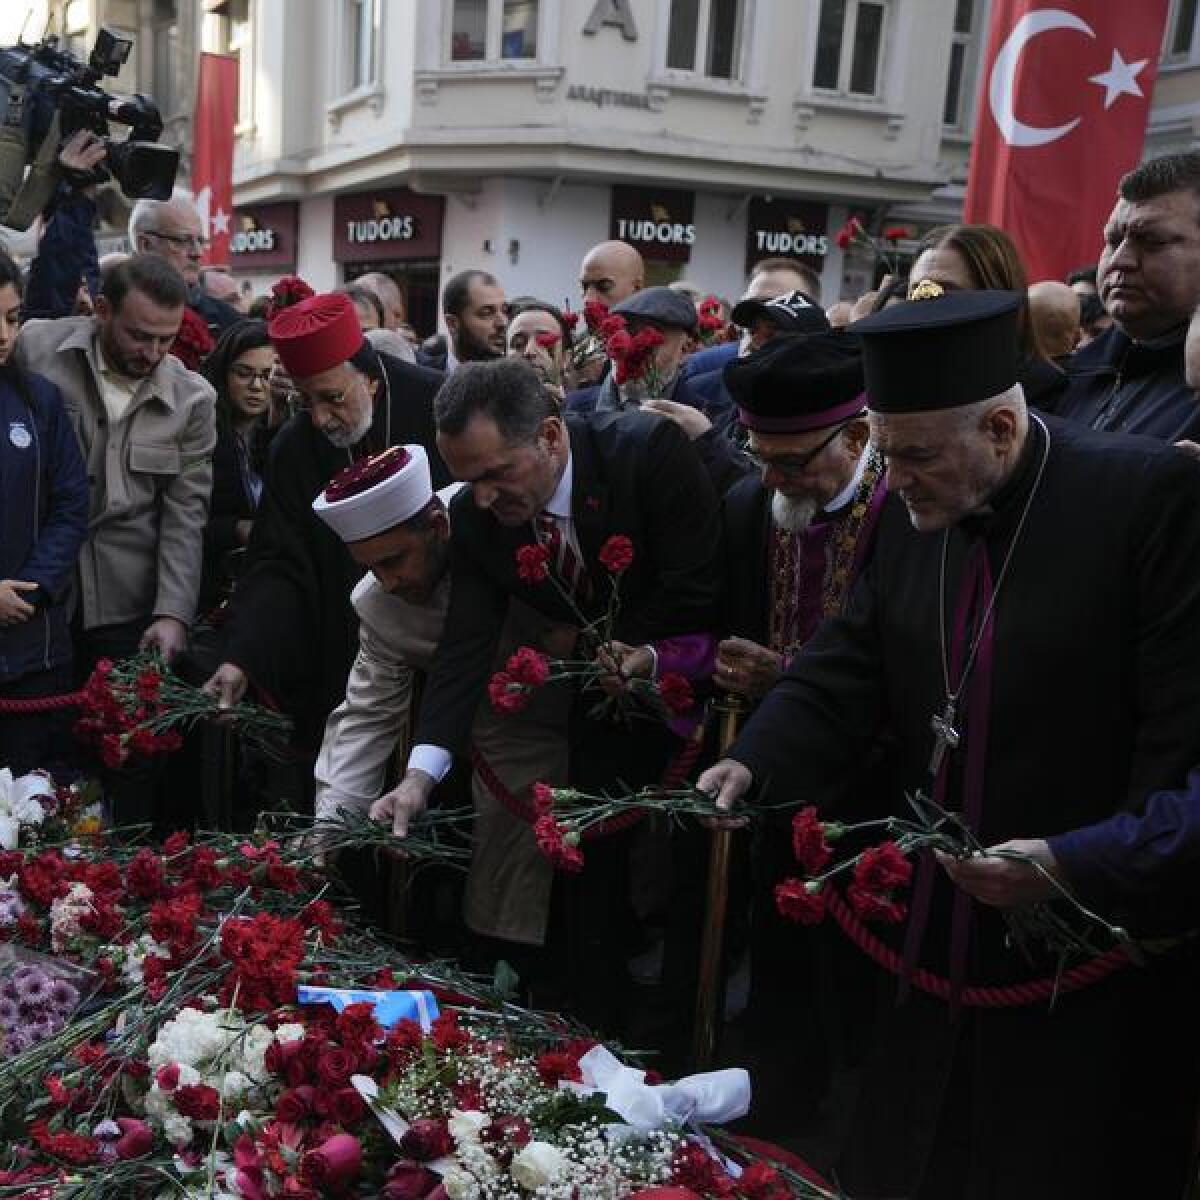 Scene of a bombing in Turkey